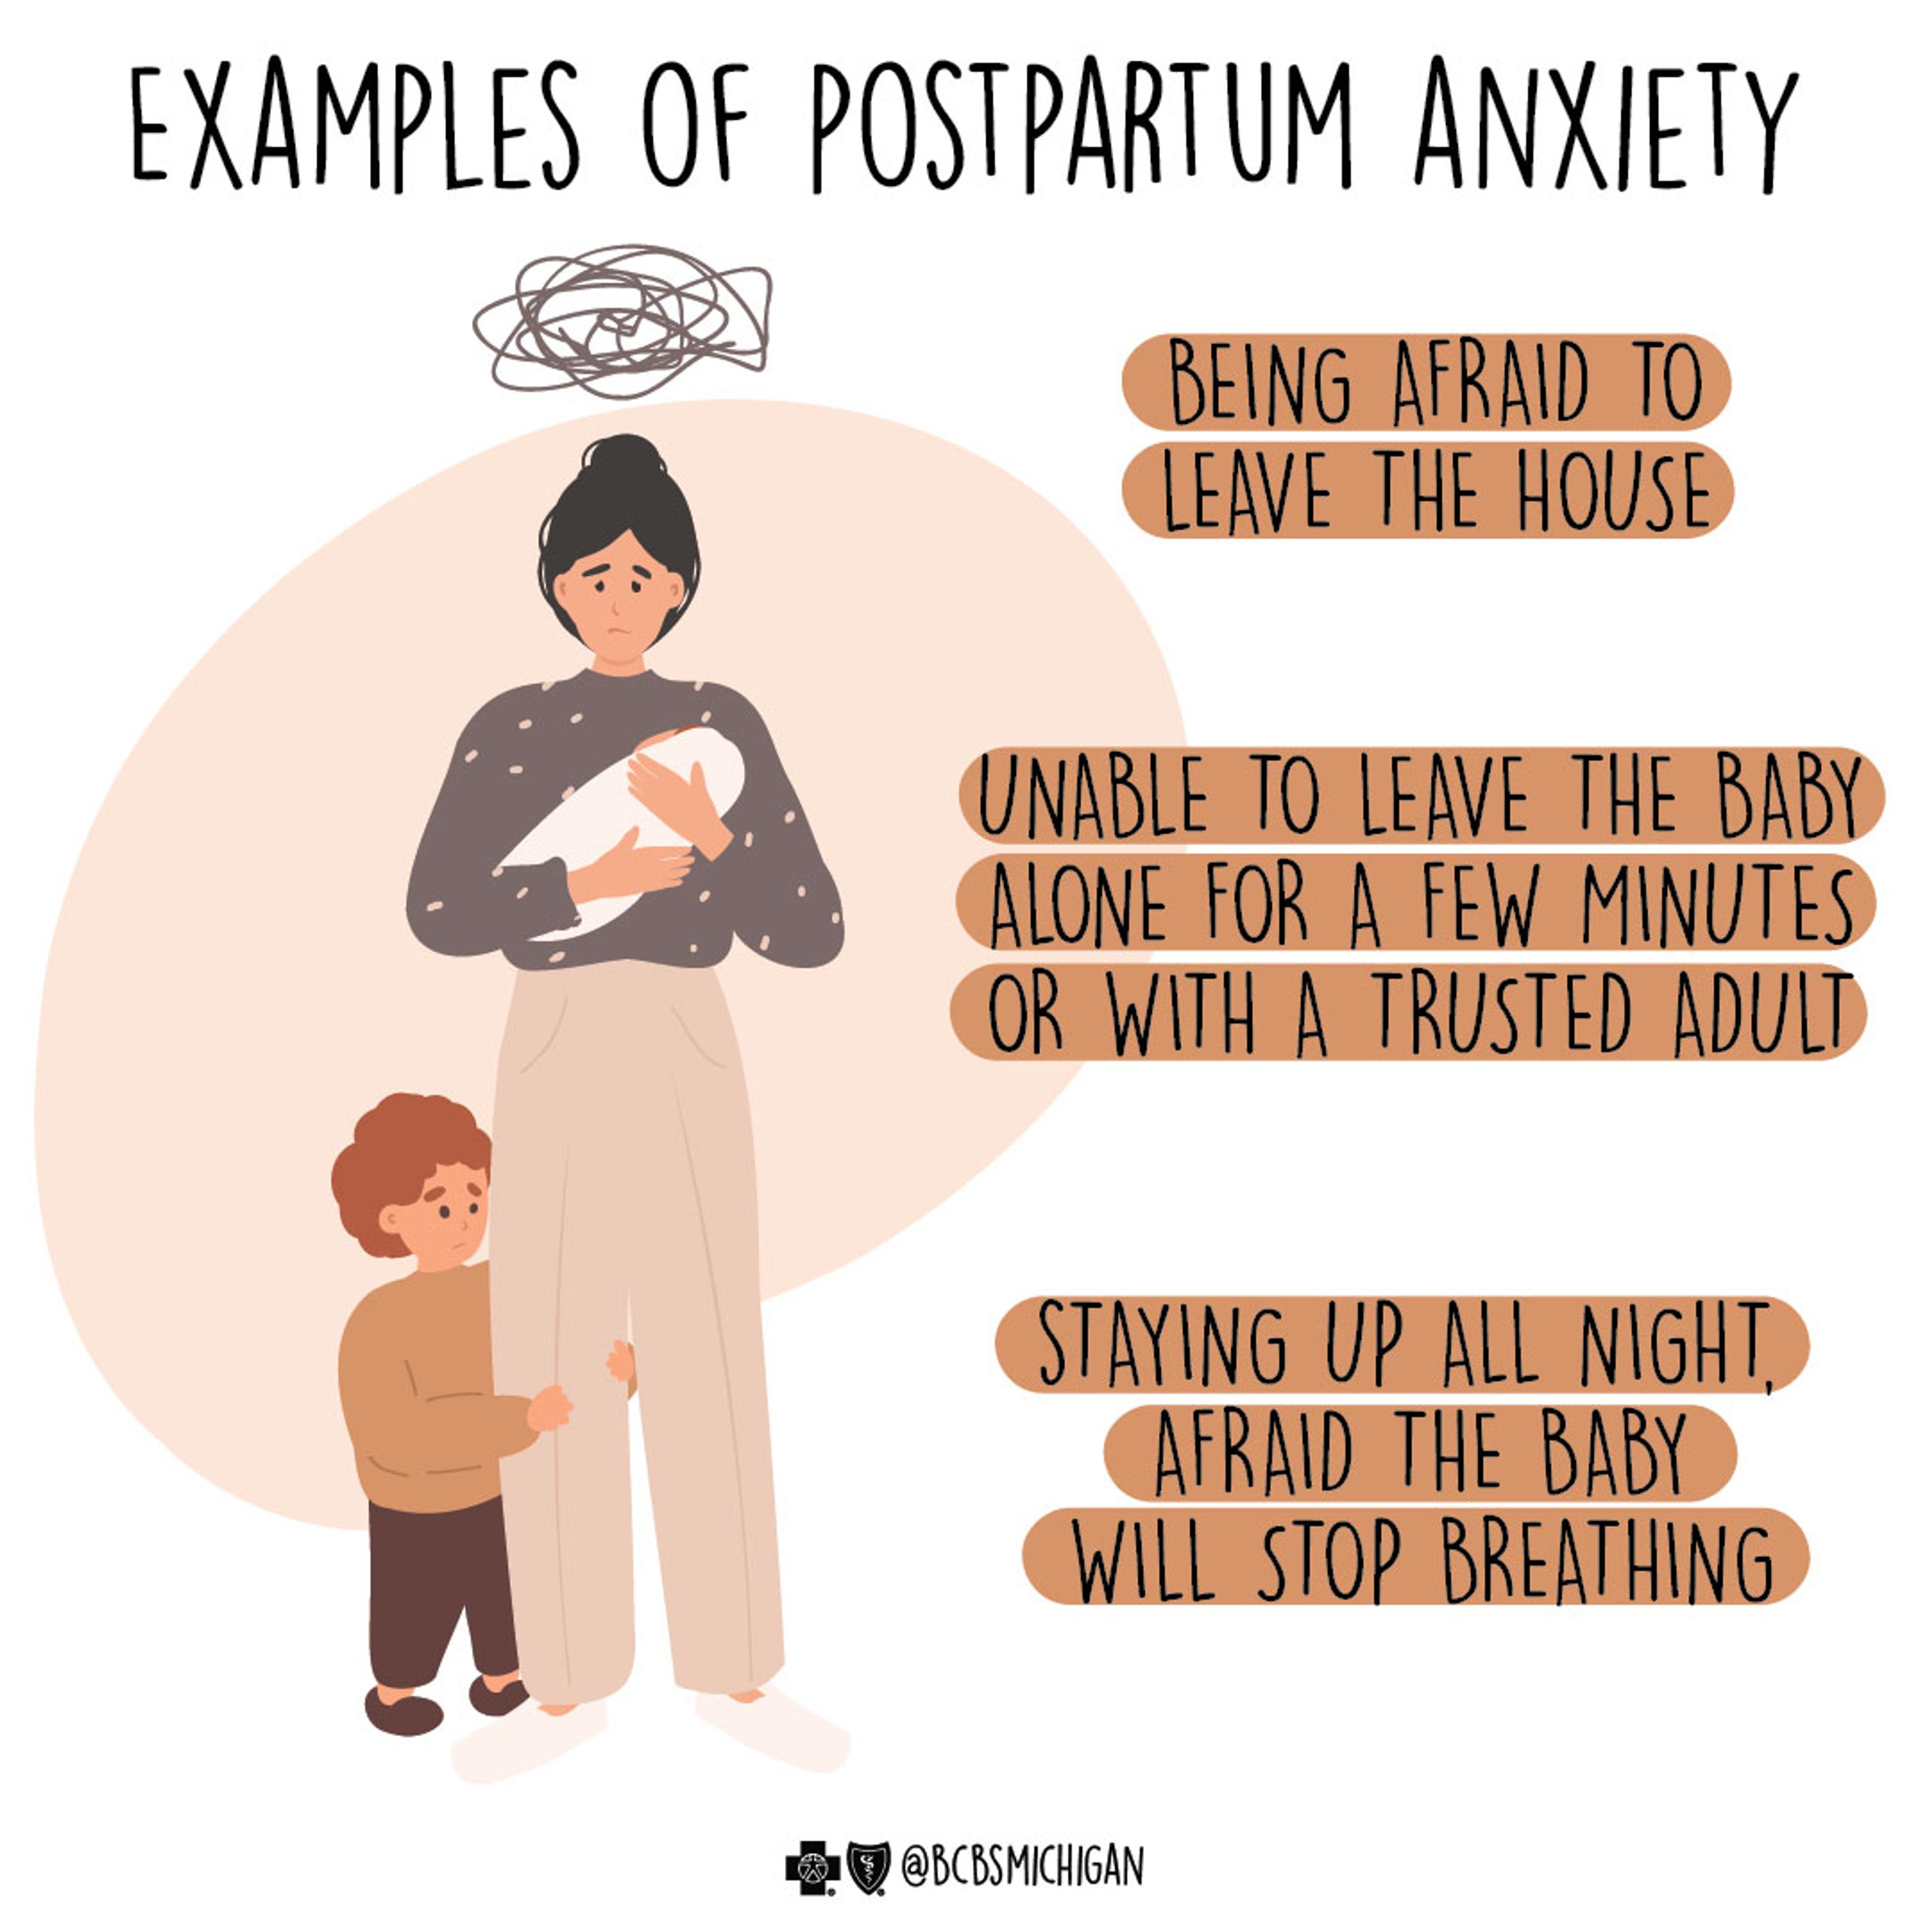 Depression During Pregnancy & Postpartum